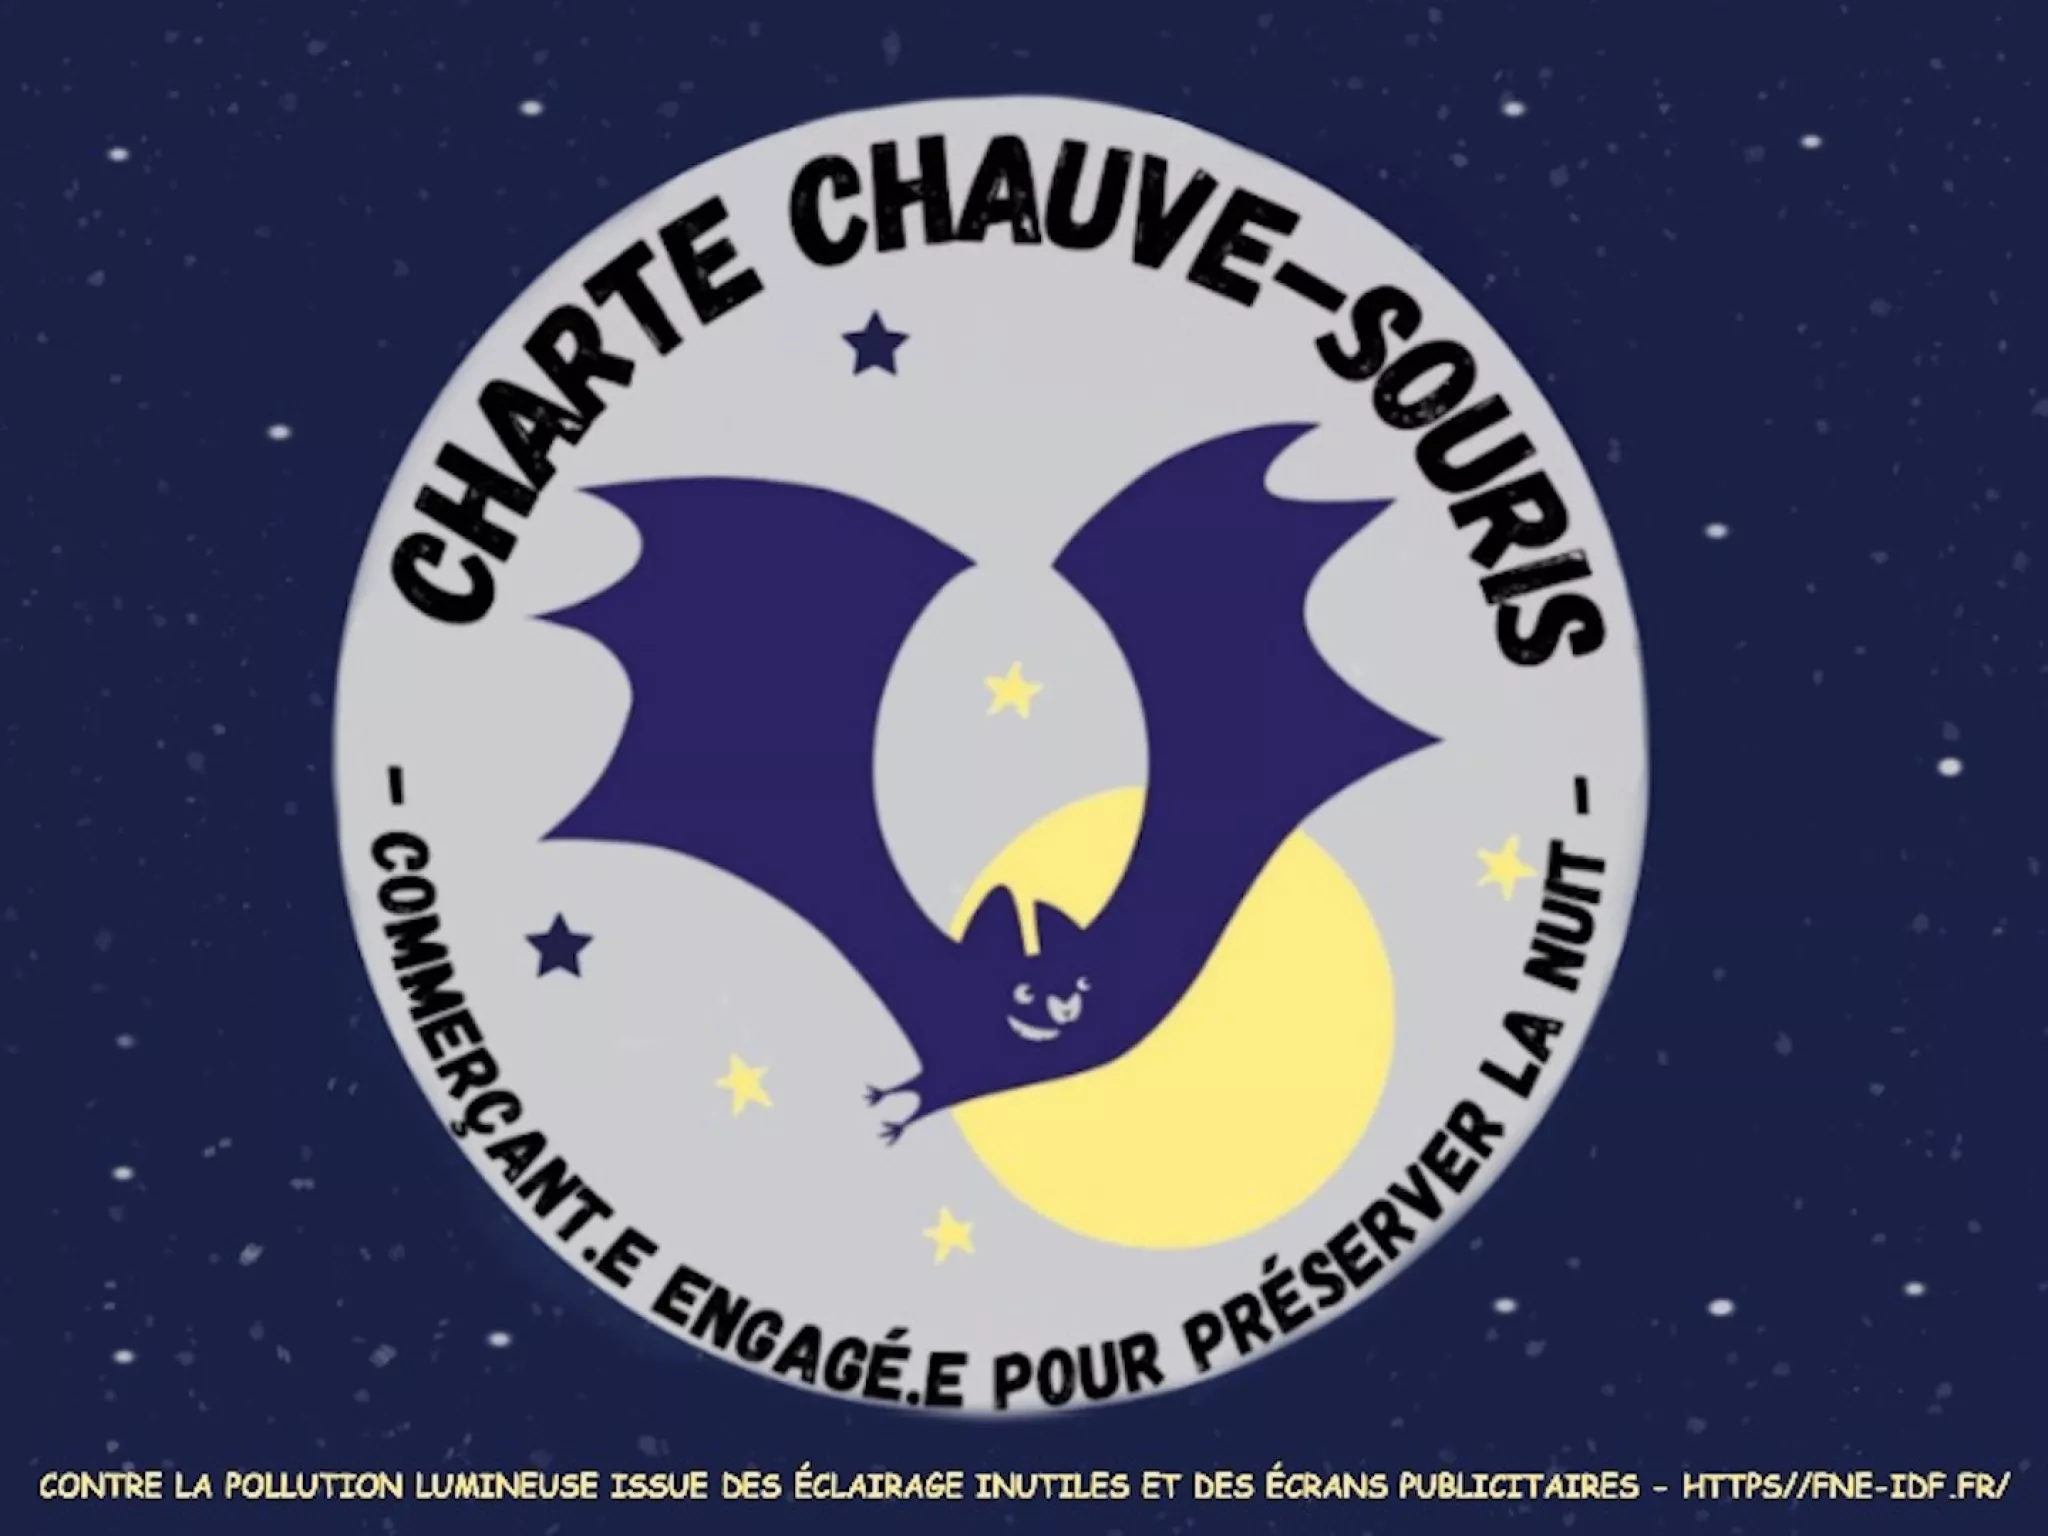 Chartre Chauve-Souris